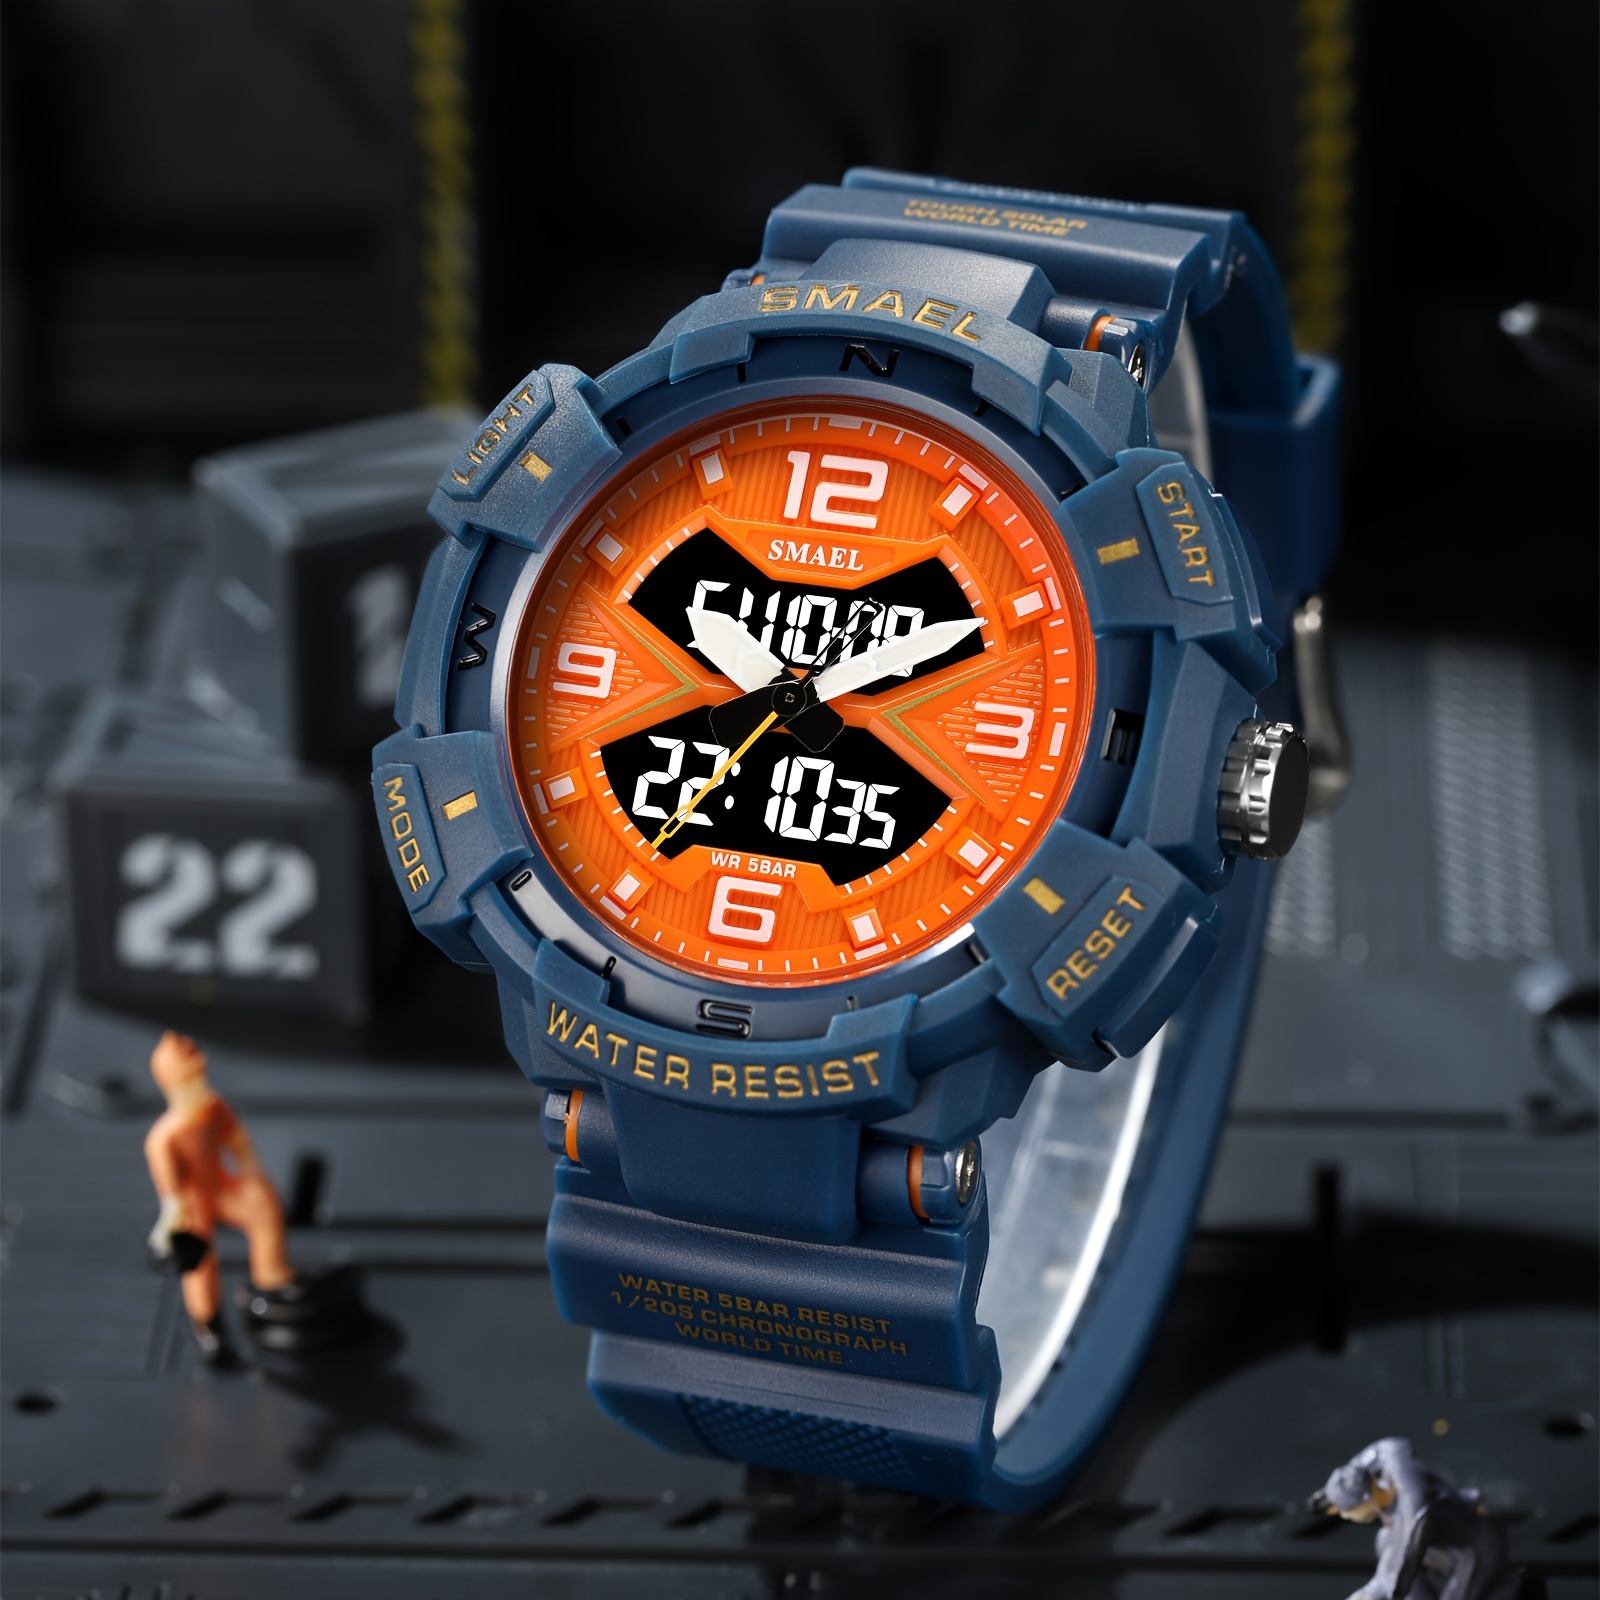 Reloj deportivo digital para hombre, reloj de pulsera militar con pantalla  de doble hora, a prueba de golpes, esfera grande, resistente al agua